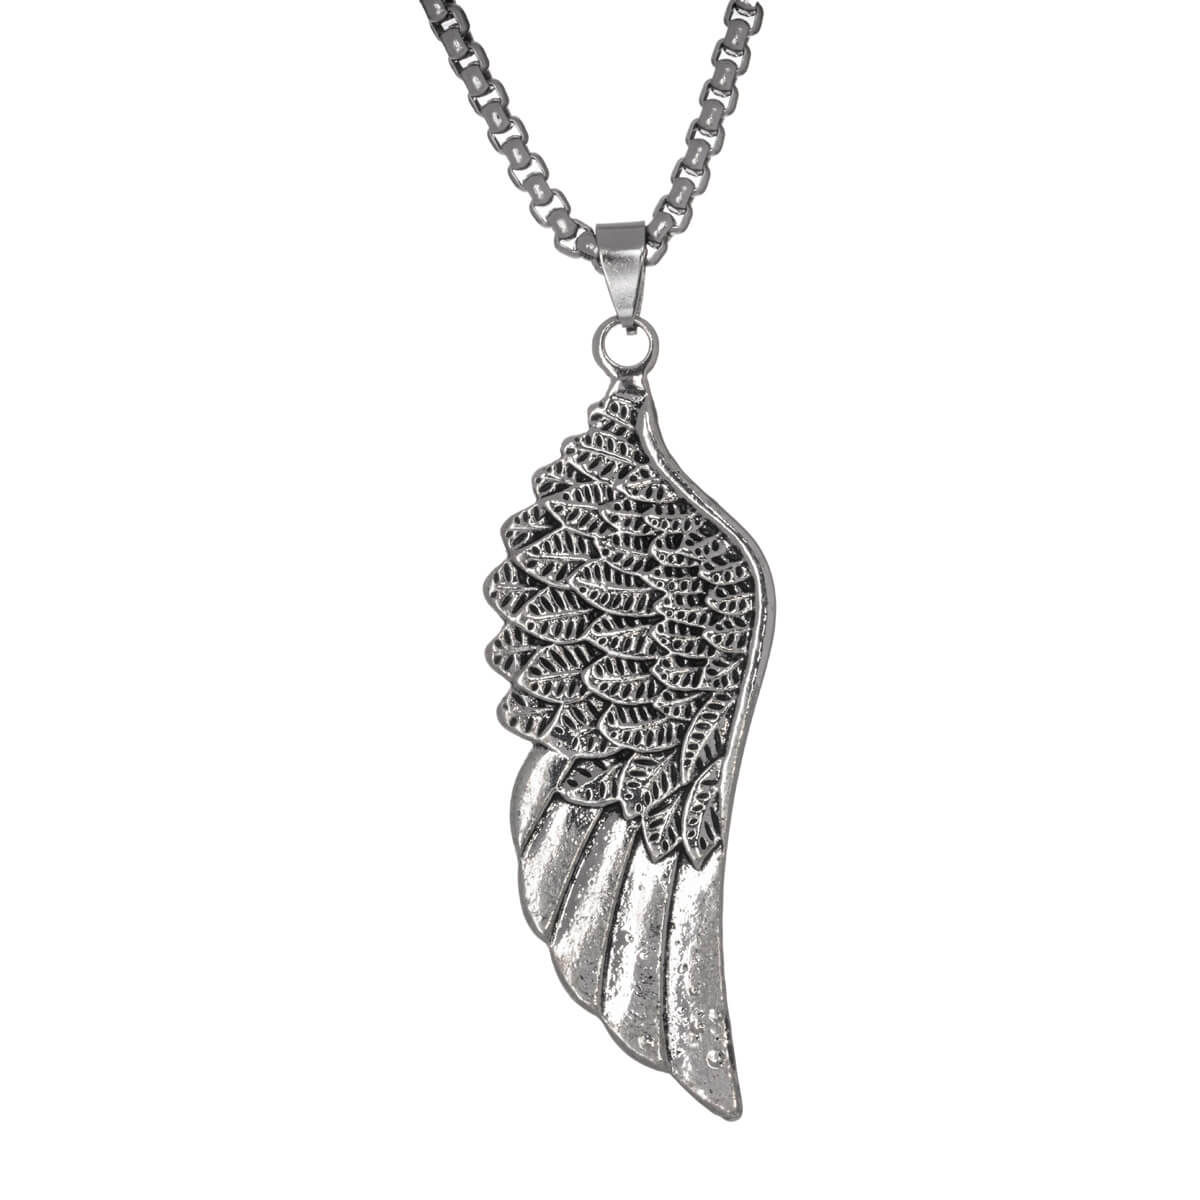 Wings pendant necklace 72cm